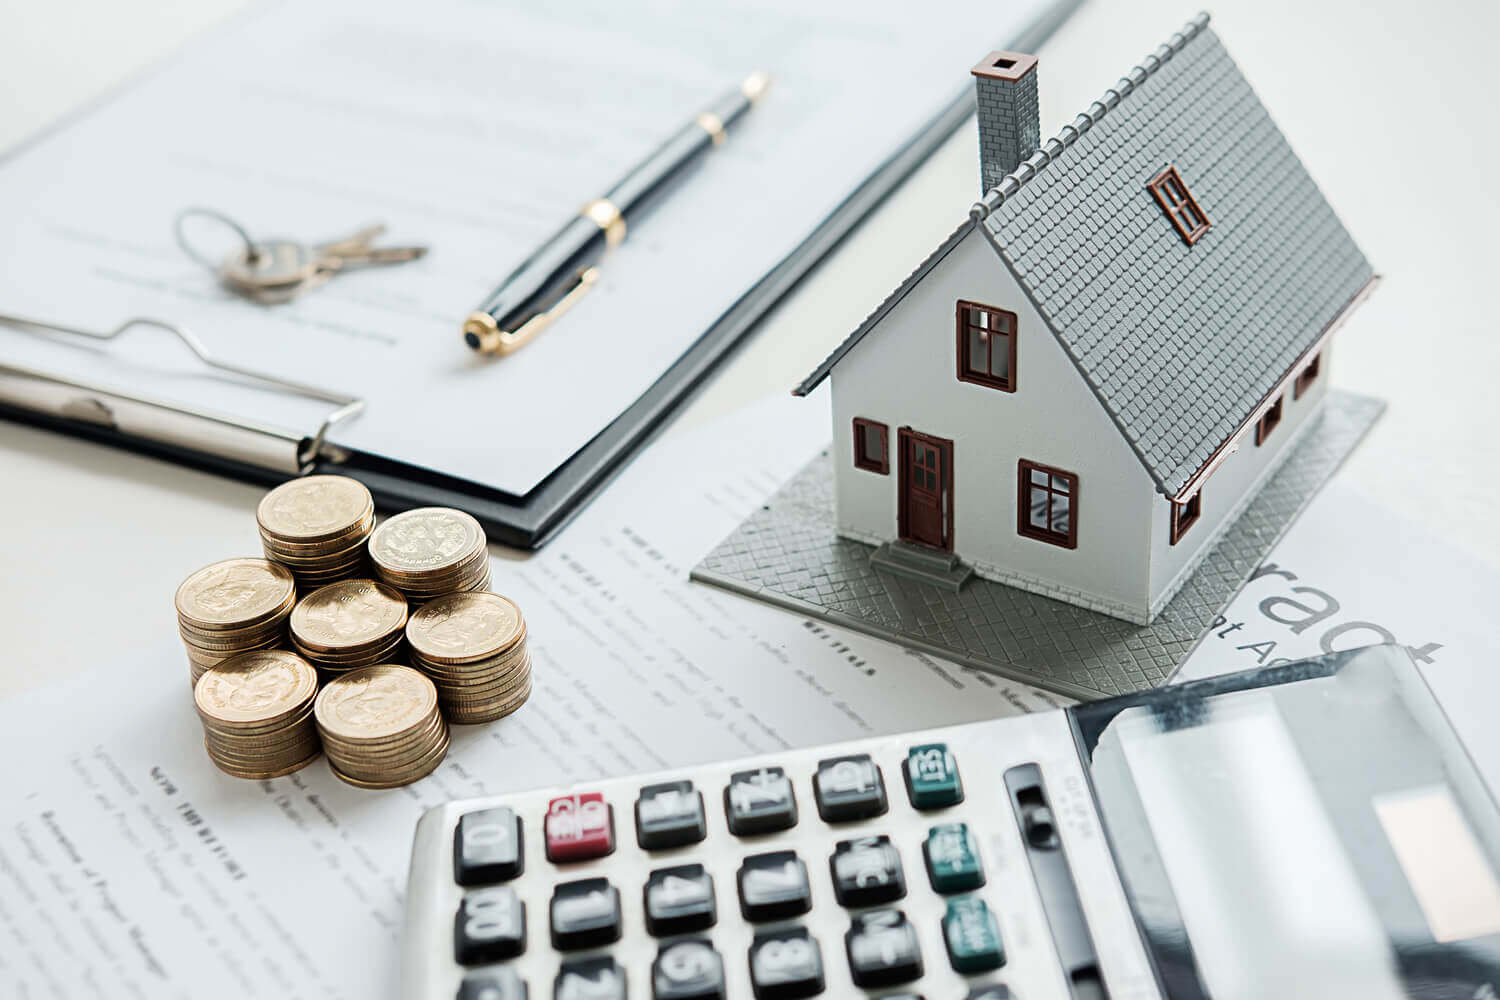 TOP 10 Ways to buy property below market value